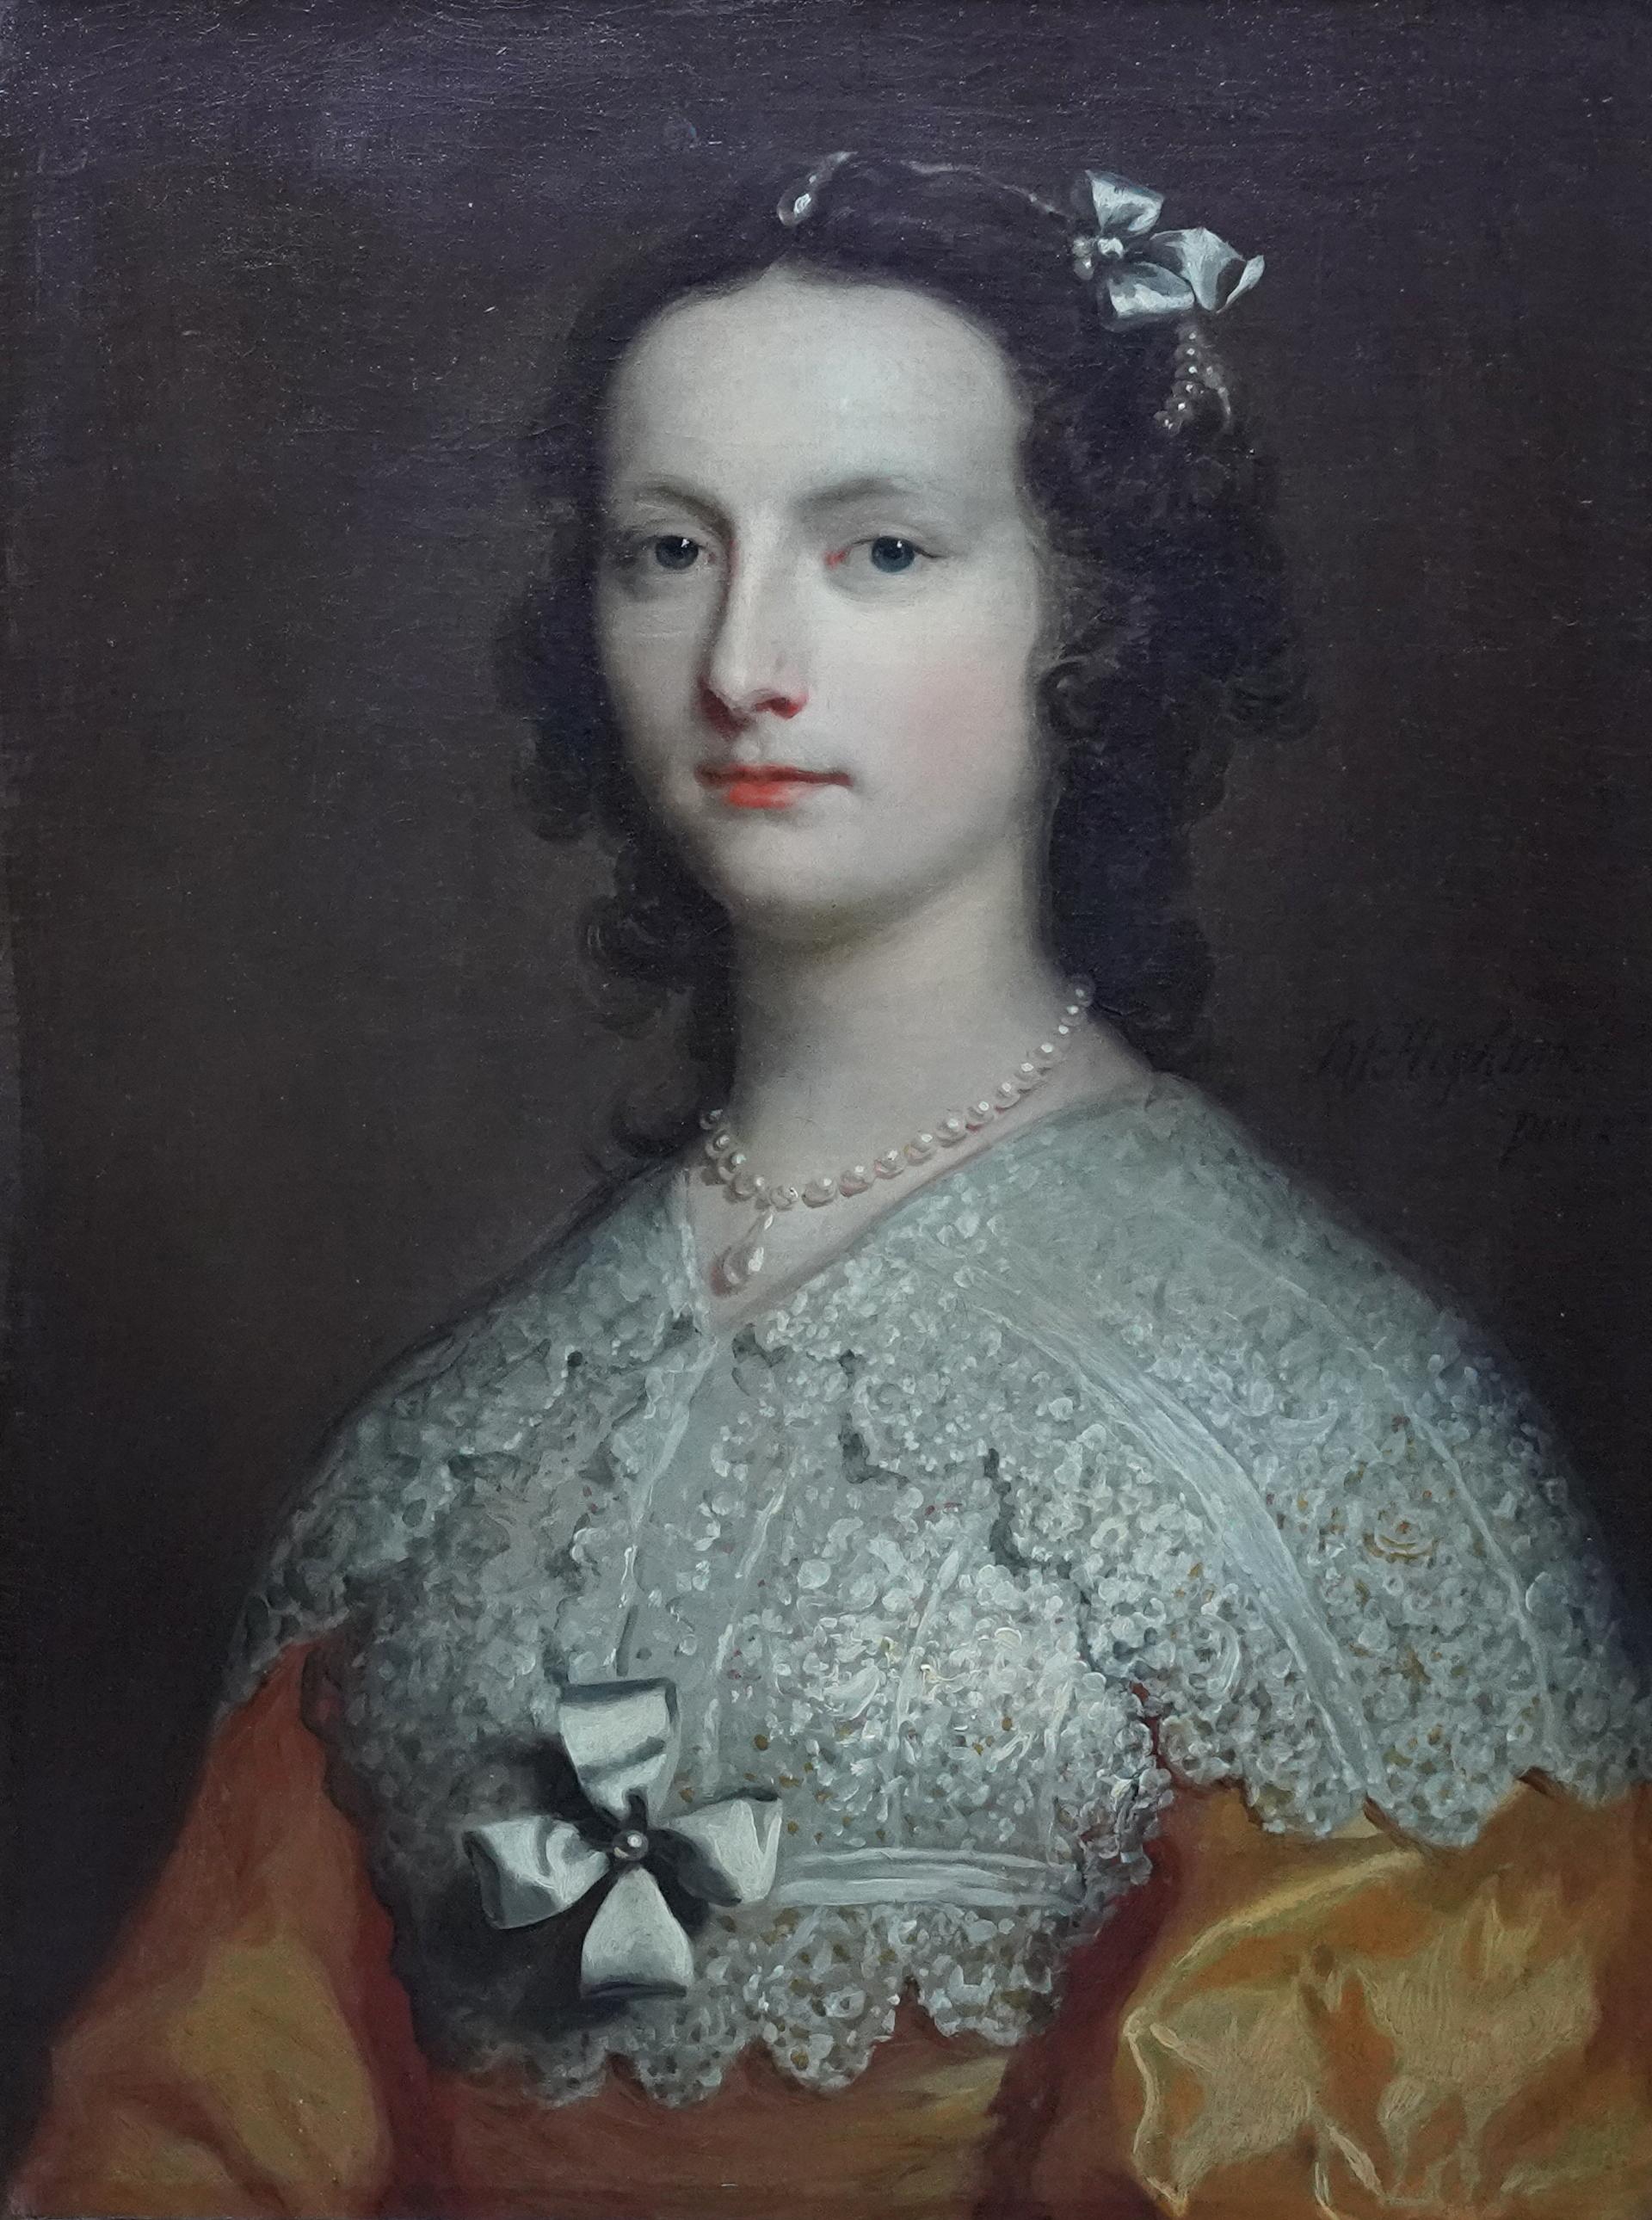 Portrait d'Elizabeth Banks - Art britannique du 18ème siècle - Peinture à l'huile de maître ancien - Painting de Joseph Highmore